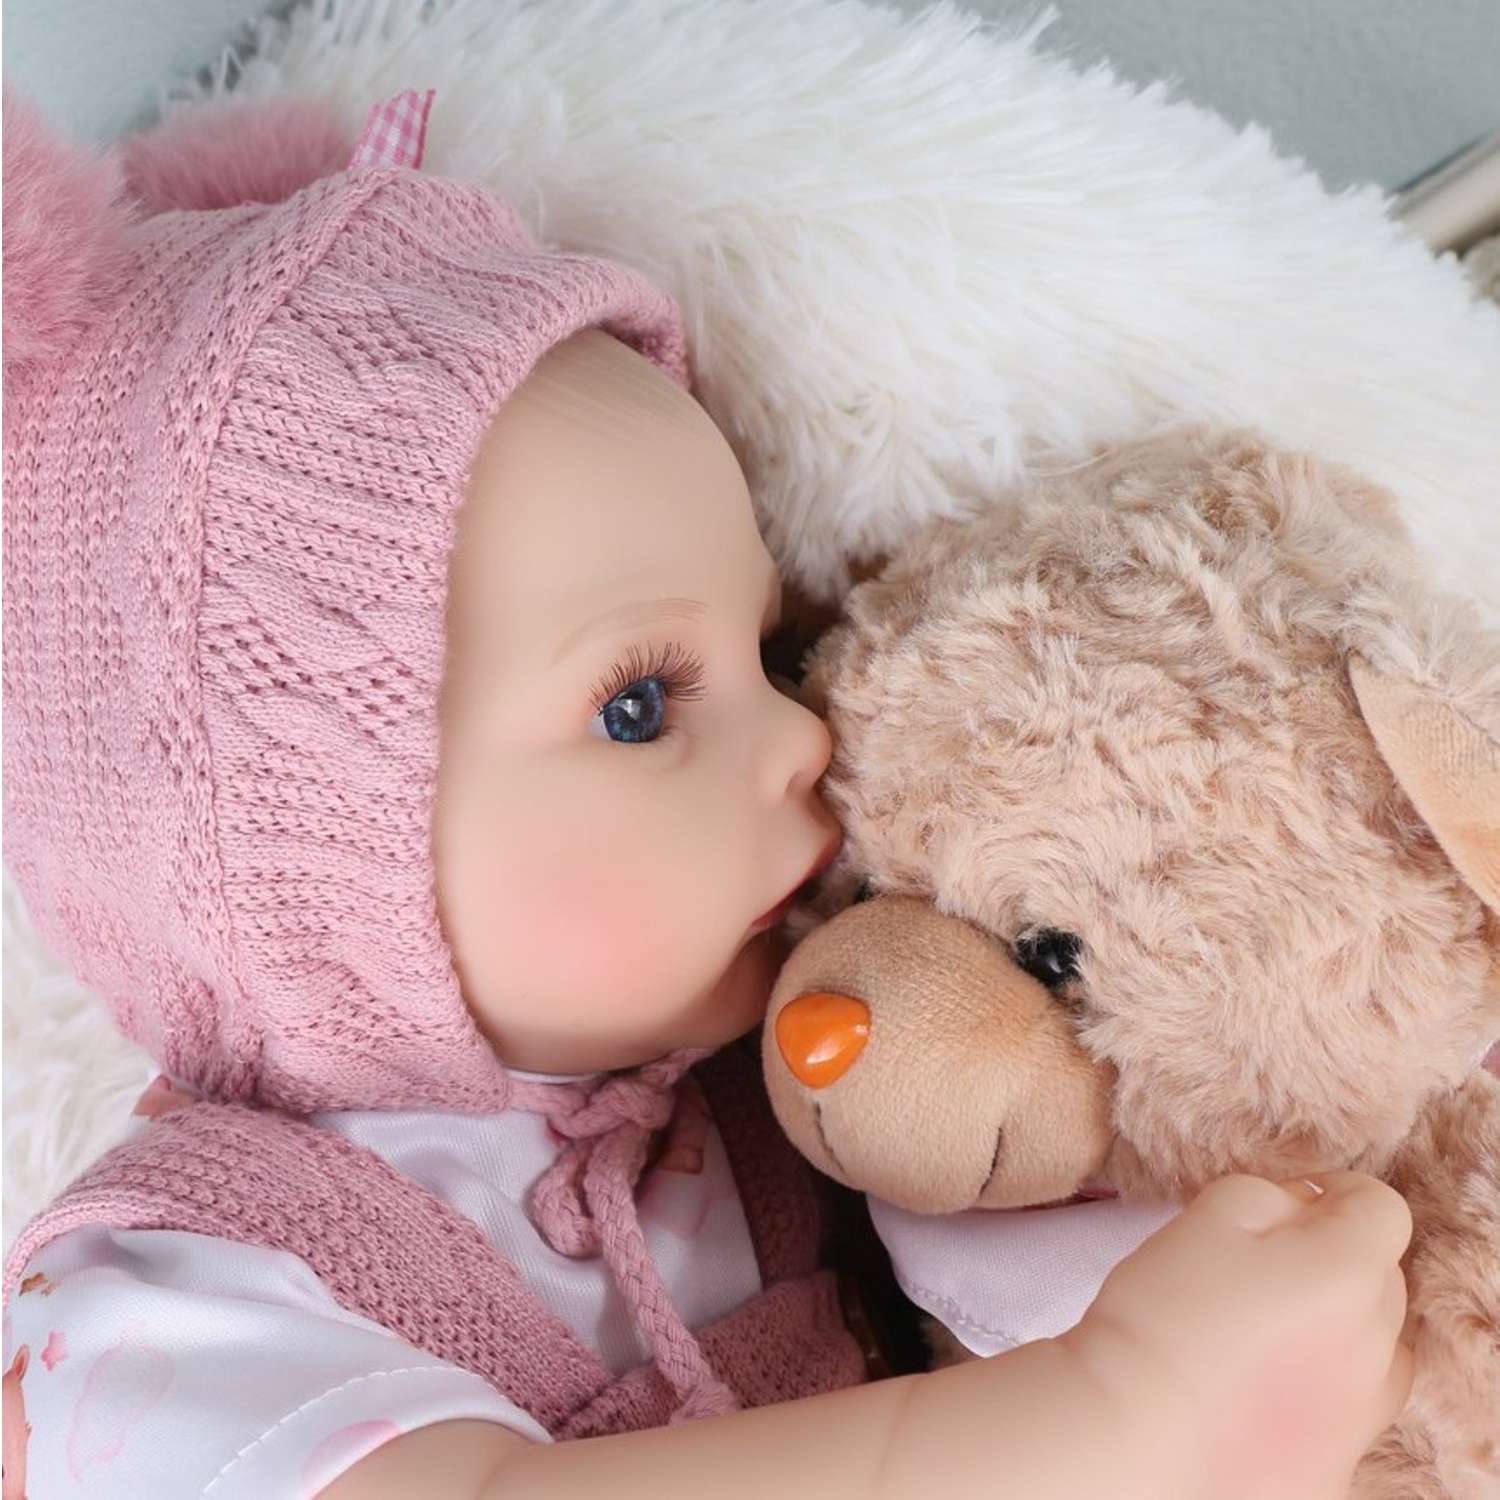 Кукла Реборн QA BABY Анна пупс с соской набор игрушки для девочки 45 см 42003 - фото 12